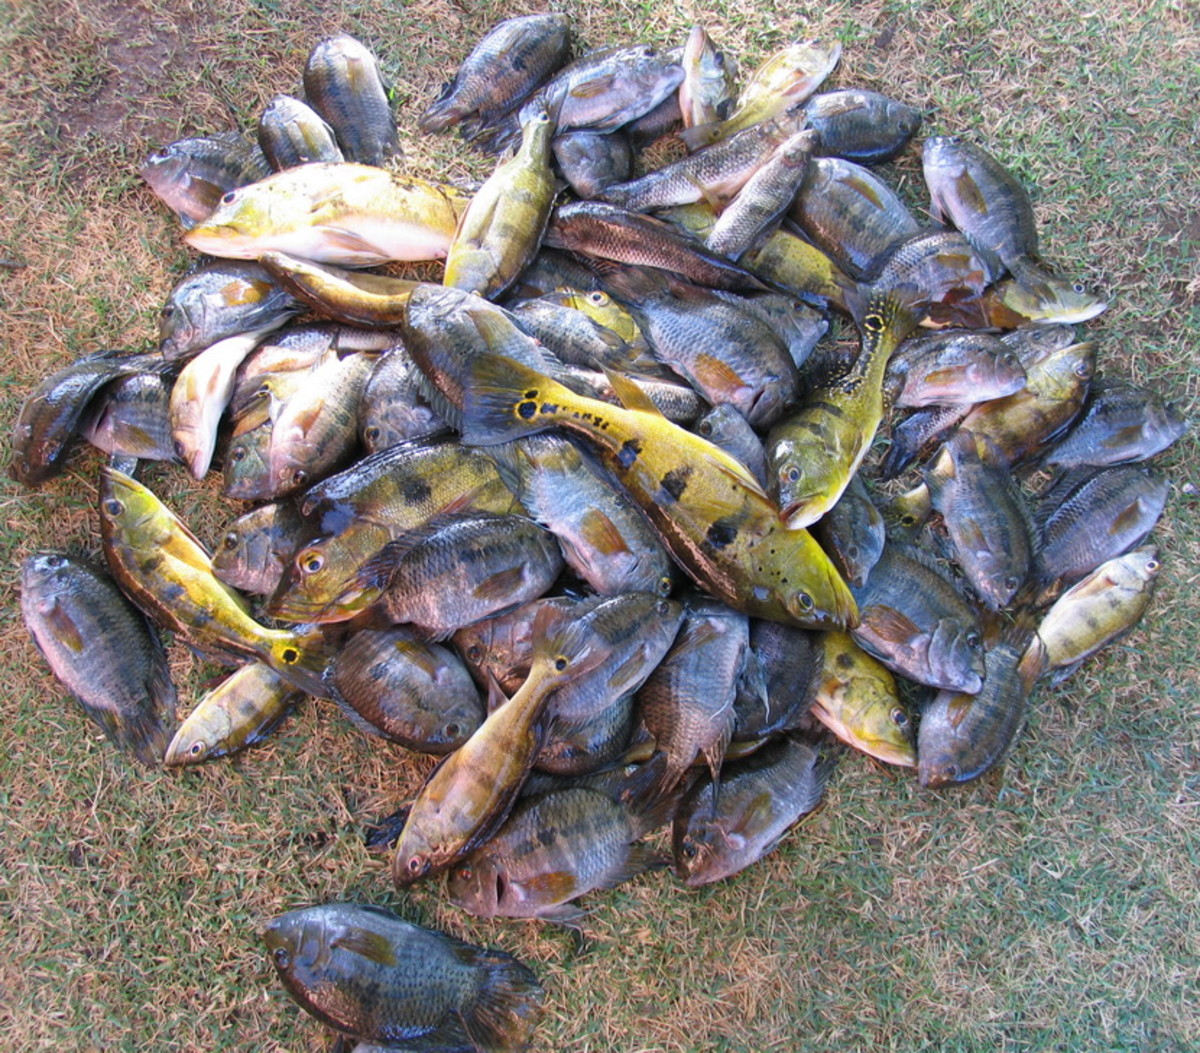 Peacock bass, wolf fish, Oscar, and tilapia